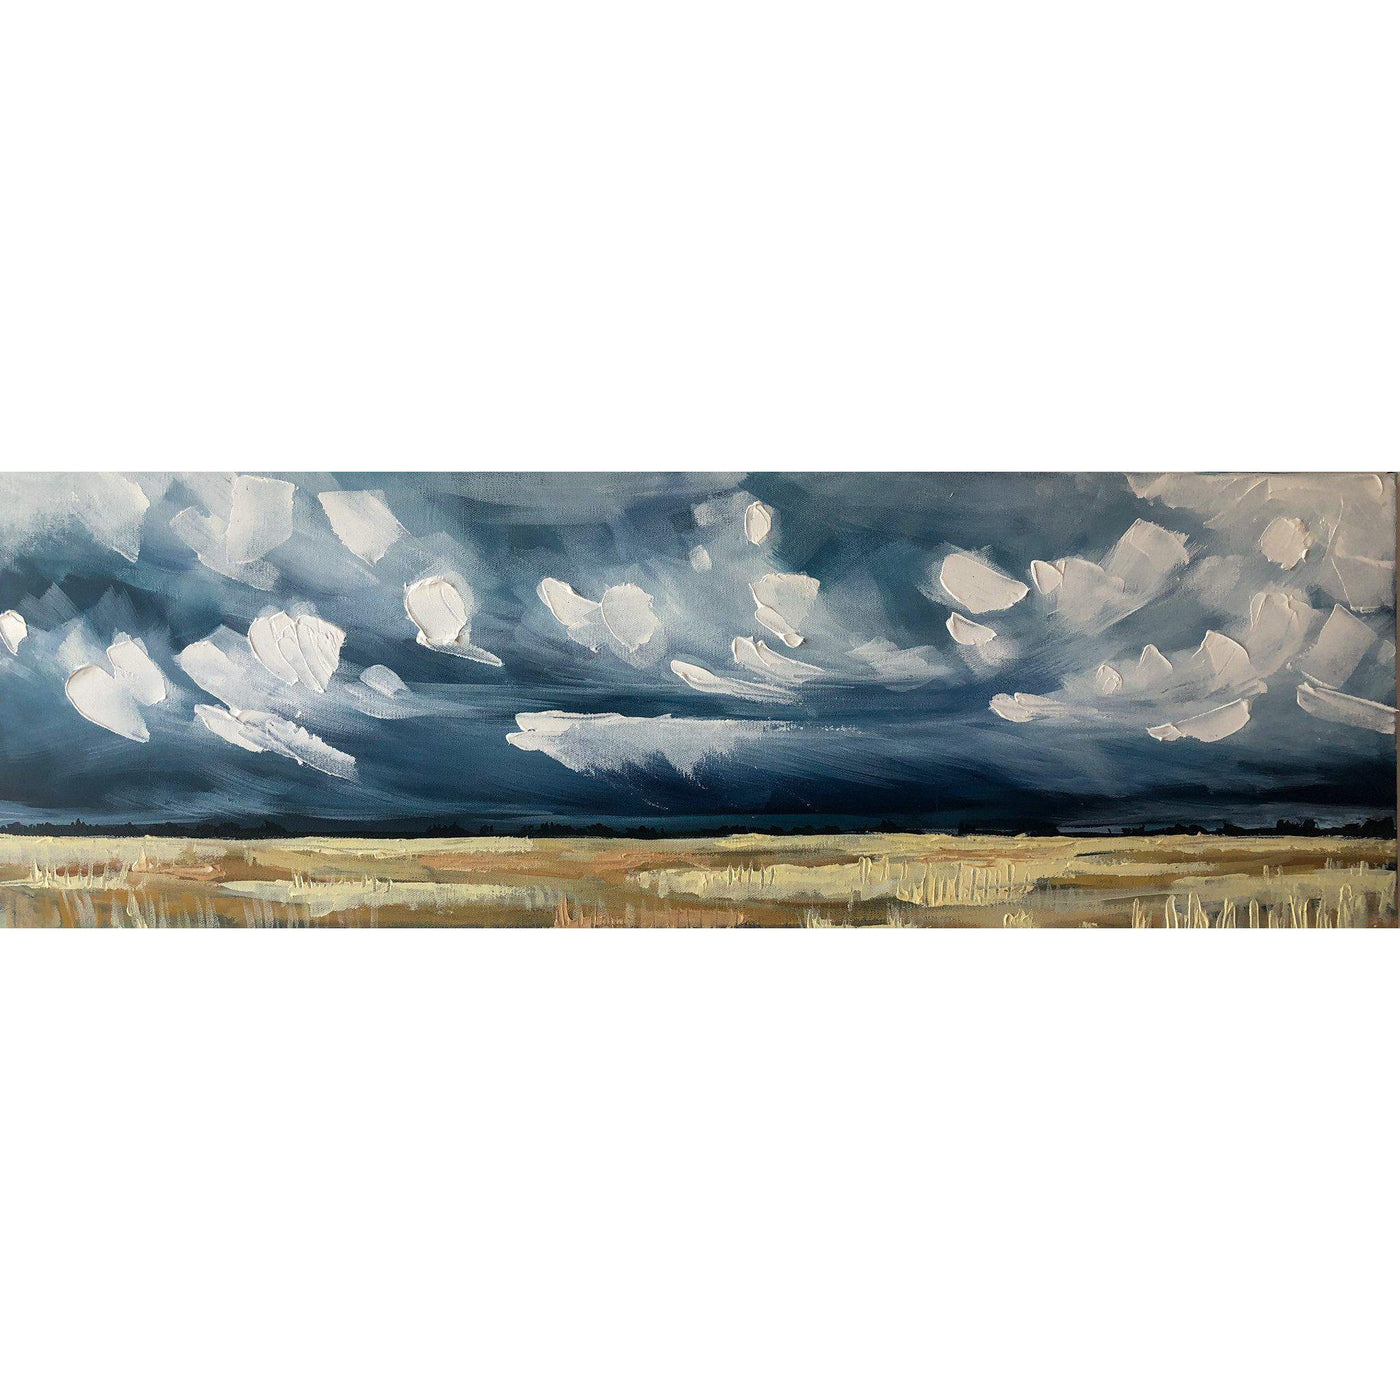 amy dixon art edmonton artist prairie landscape painting